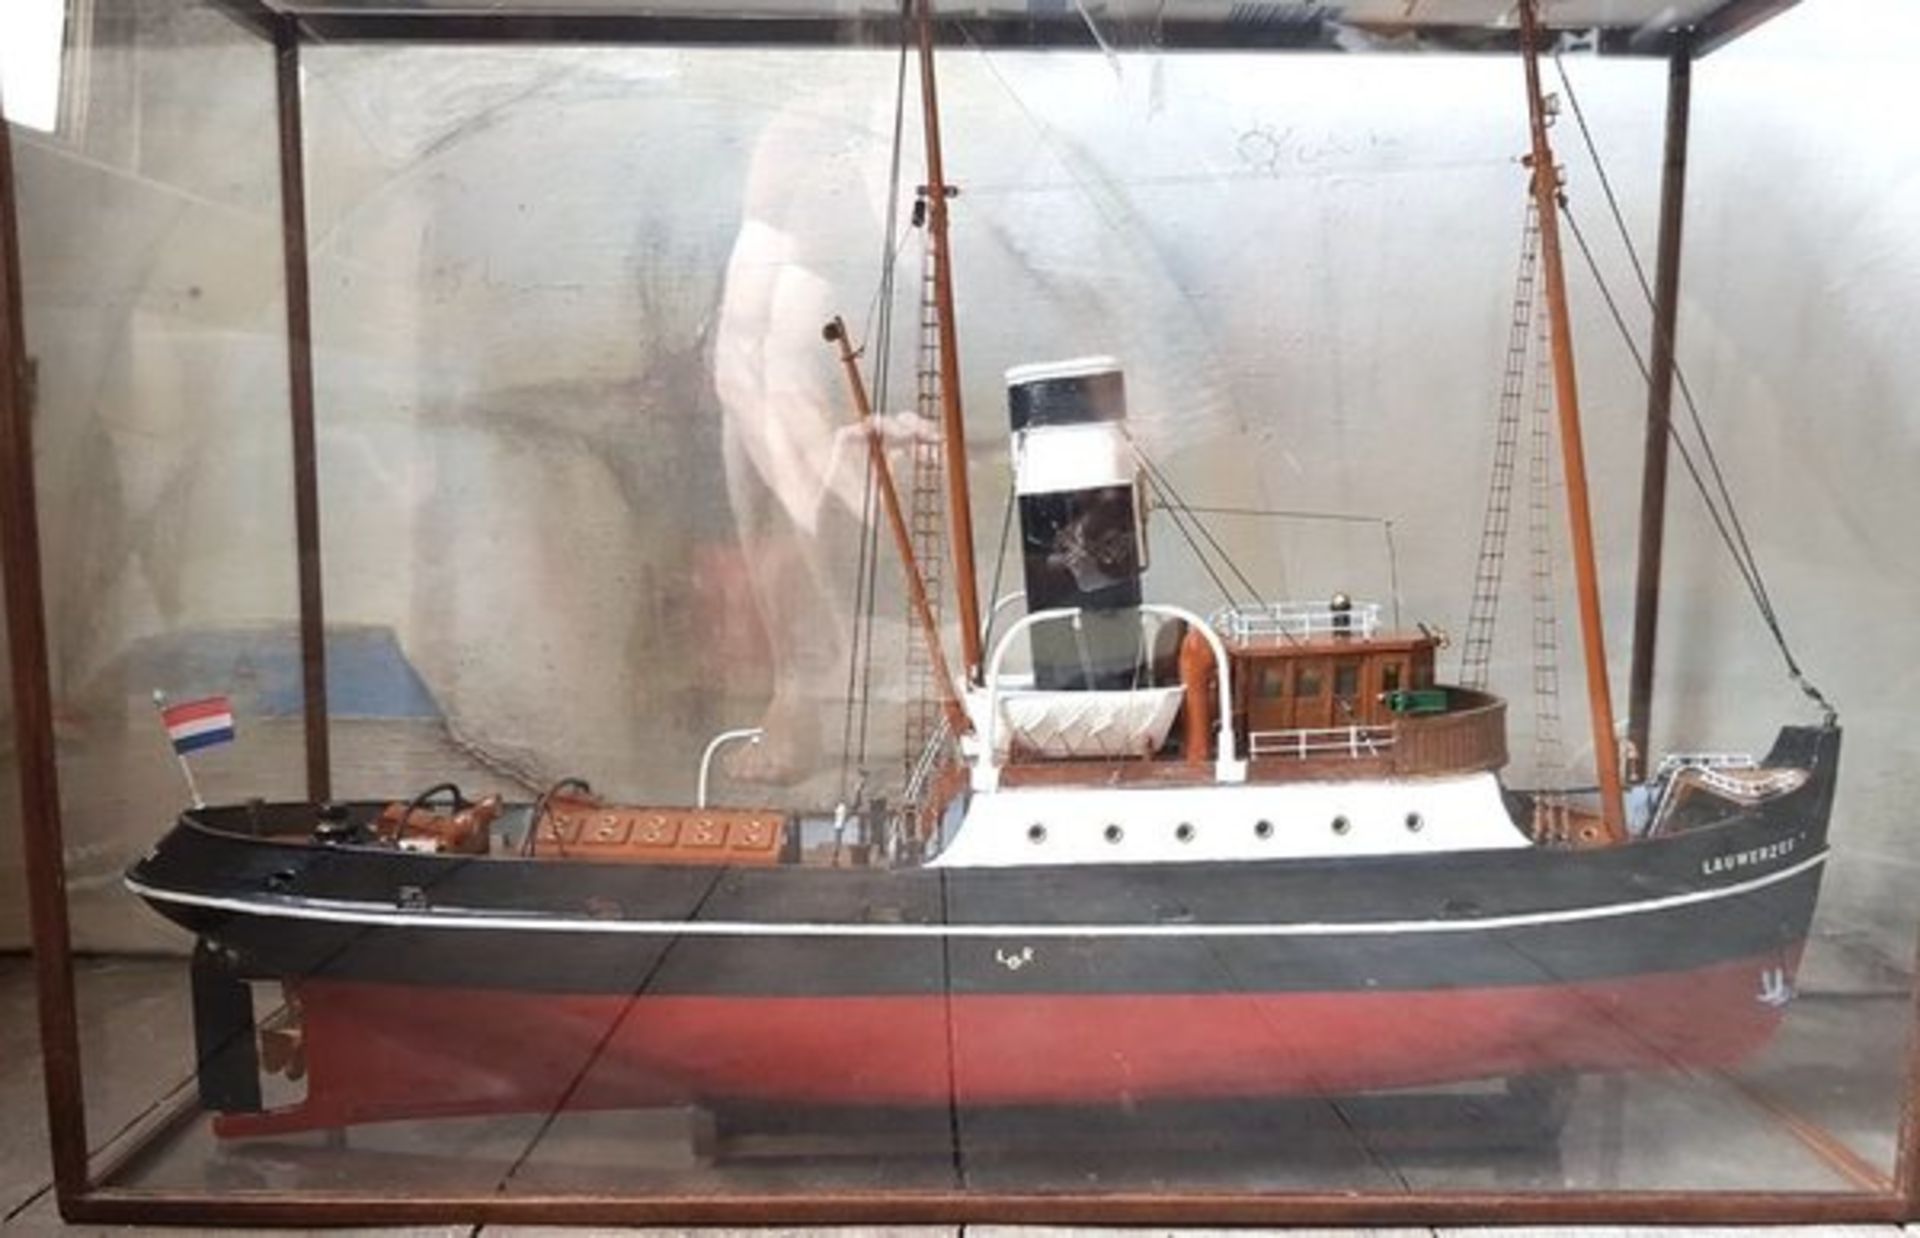 (Nautica) Scheepsmodel LauwerzeeScheepsmodel van een sleepboot in glazen vitrine. Conditie: In goede